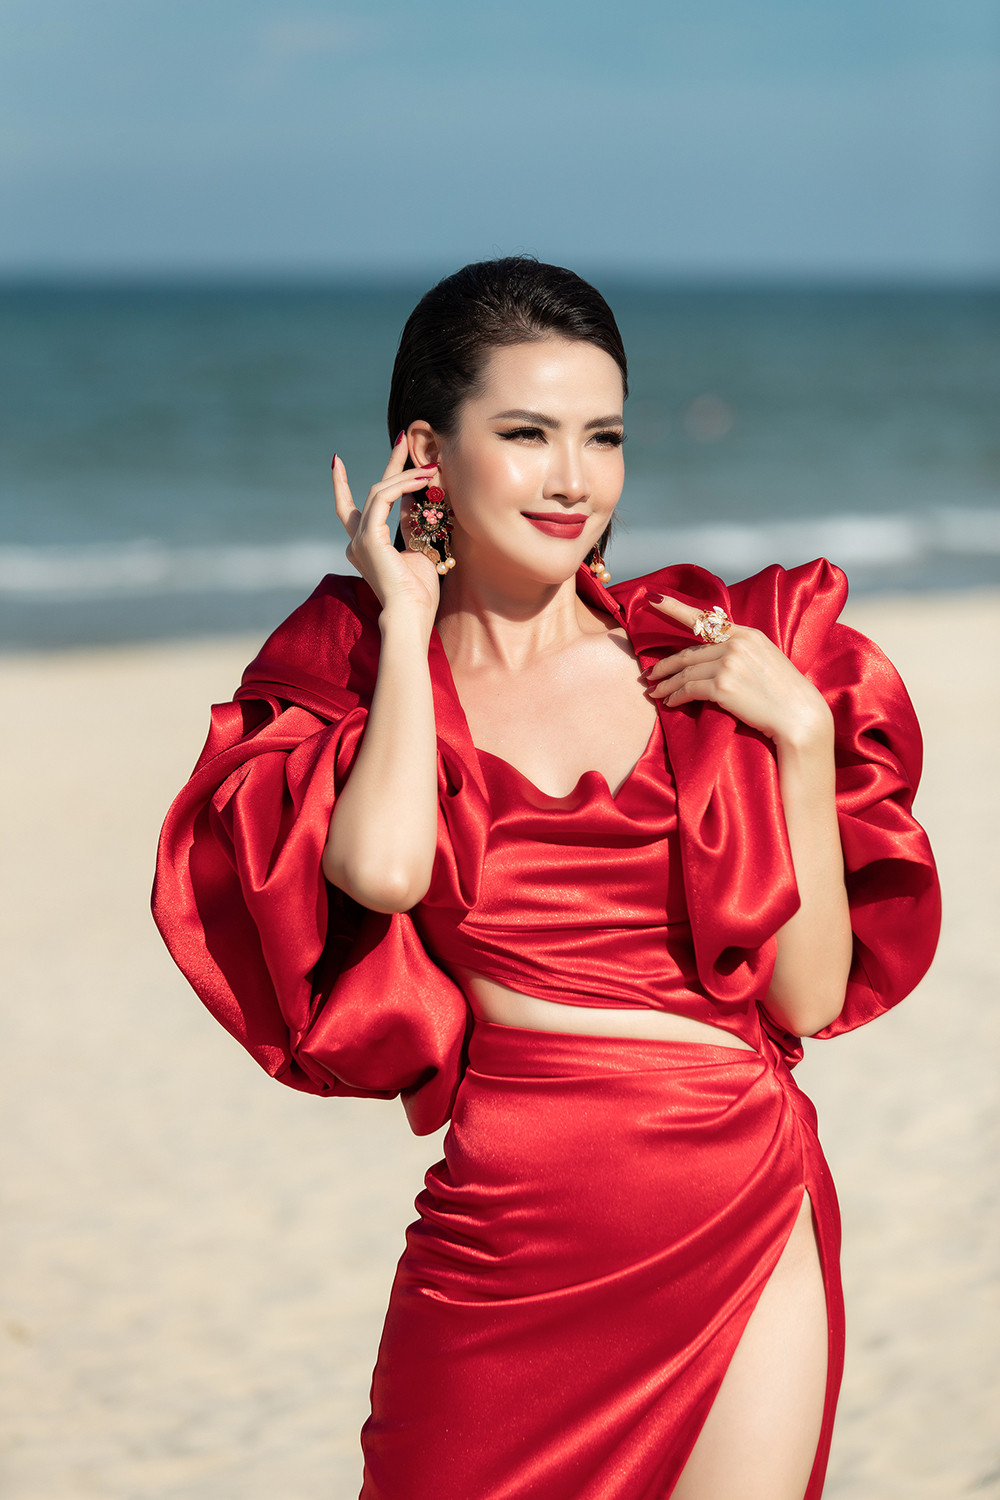 32 tuổi vẫn độc thân, Hoa hậu Phan Thị Mơ khẳng định không lo lắng  - 2